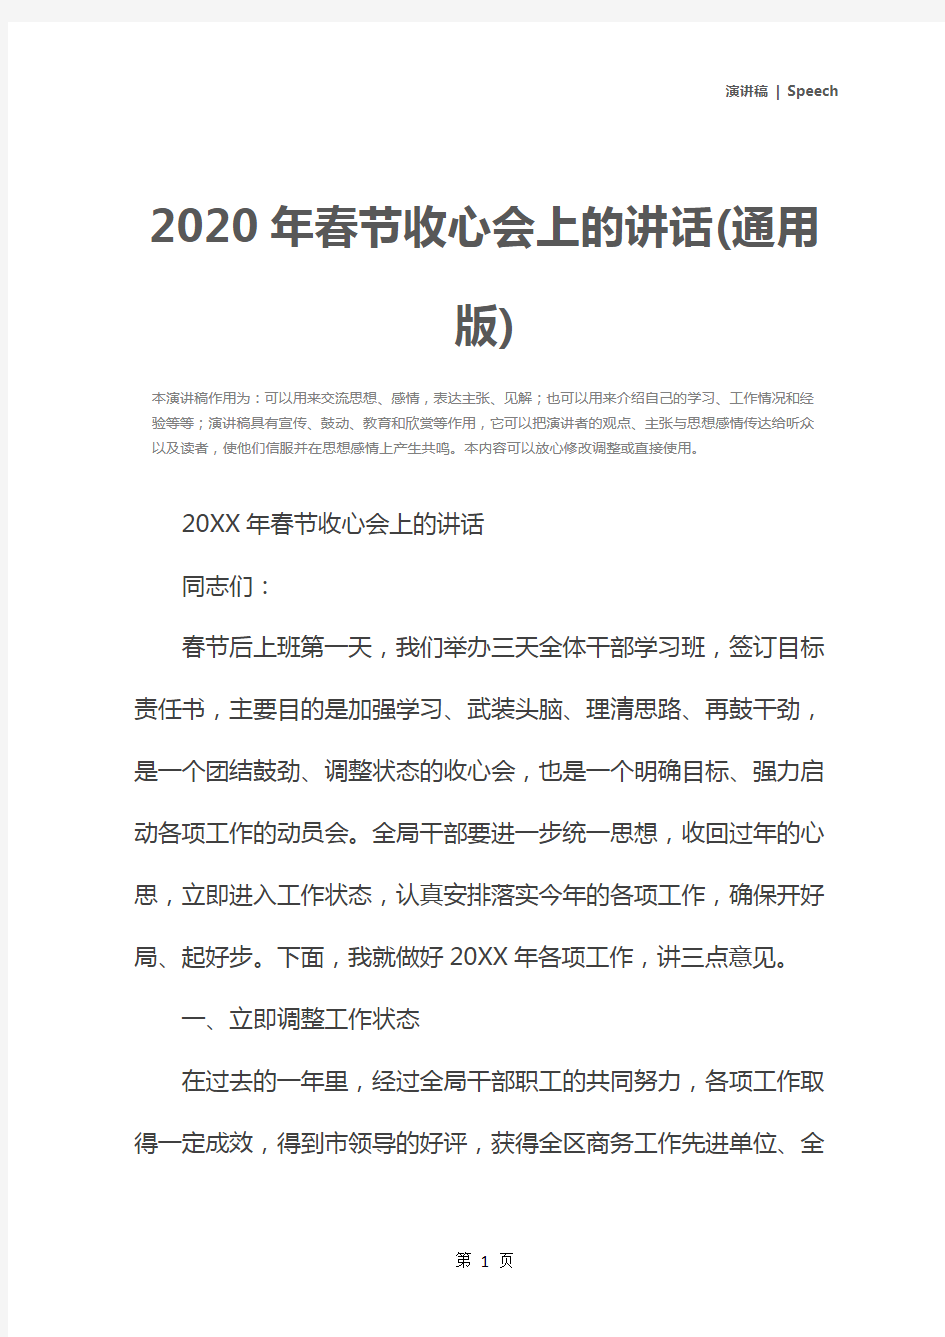 2020年春节收心会上的讲话(通用版)